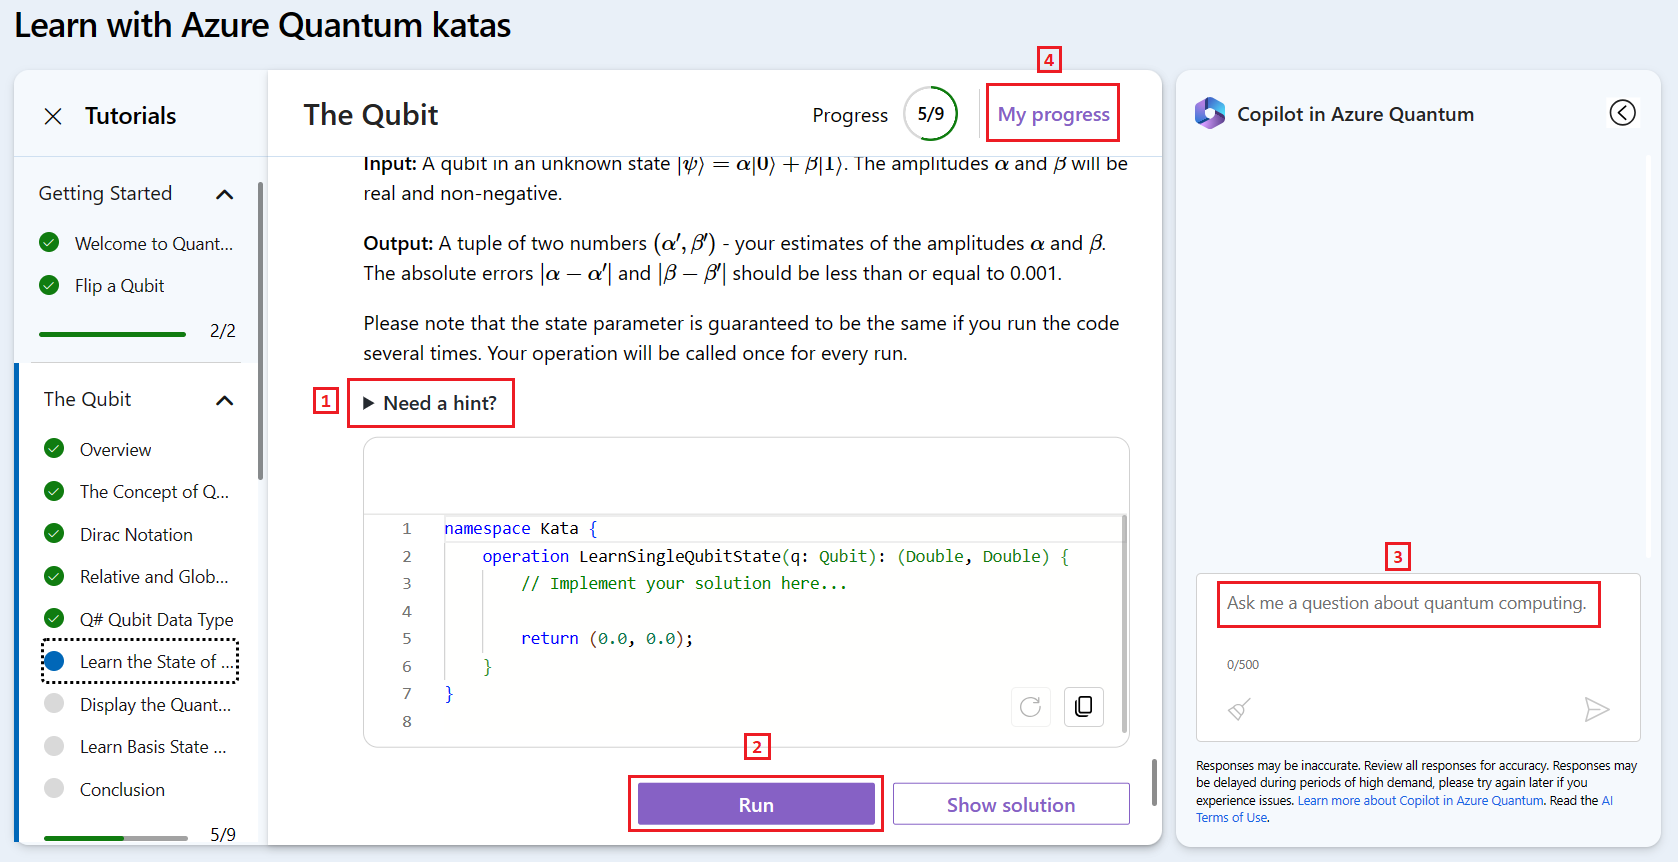 Zrzut ekranu witryny internetowej usługi Azure Quantum przedstawiający samouczki Quantum Kata z rozwiązaniem Copilot.